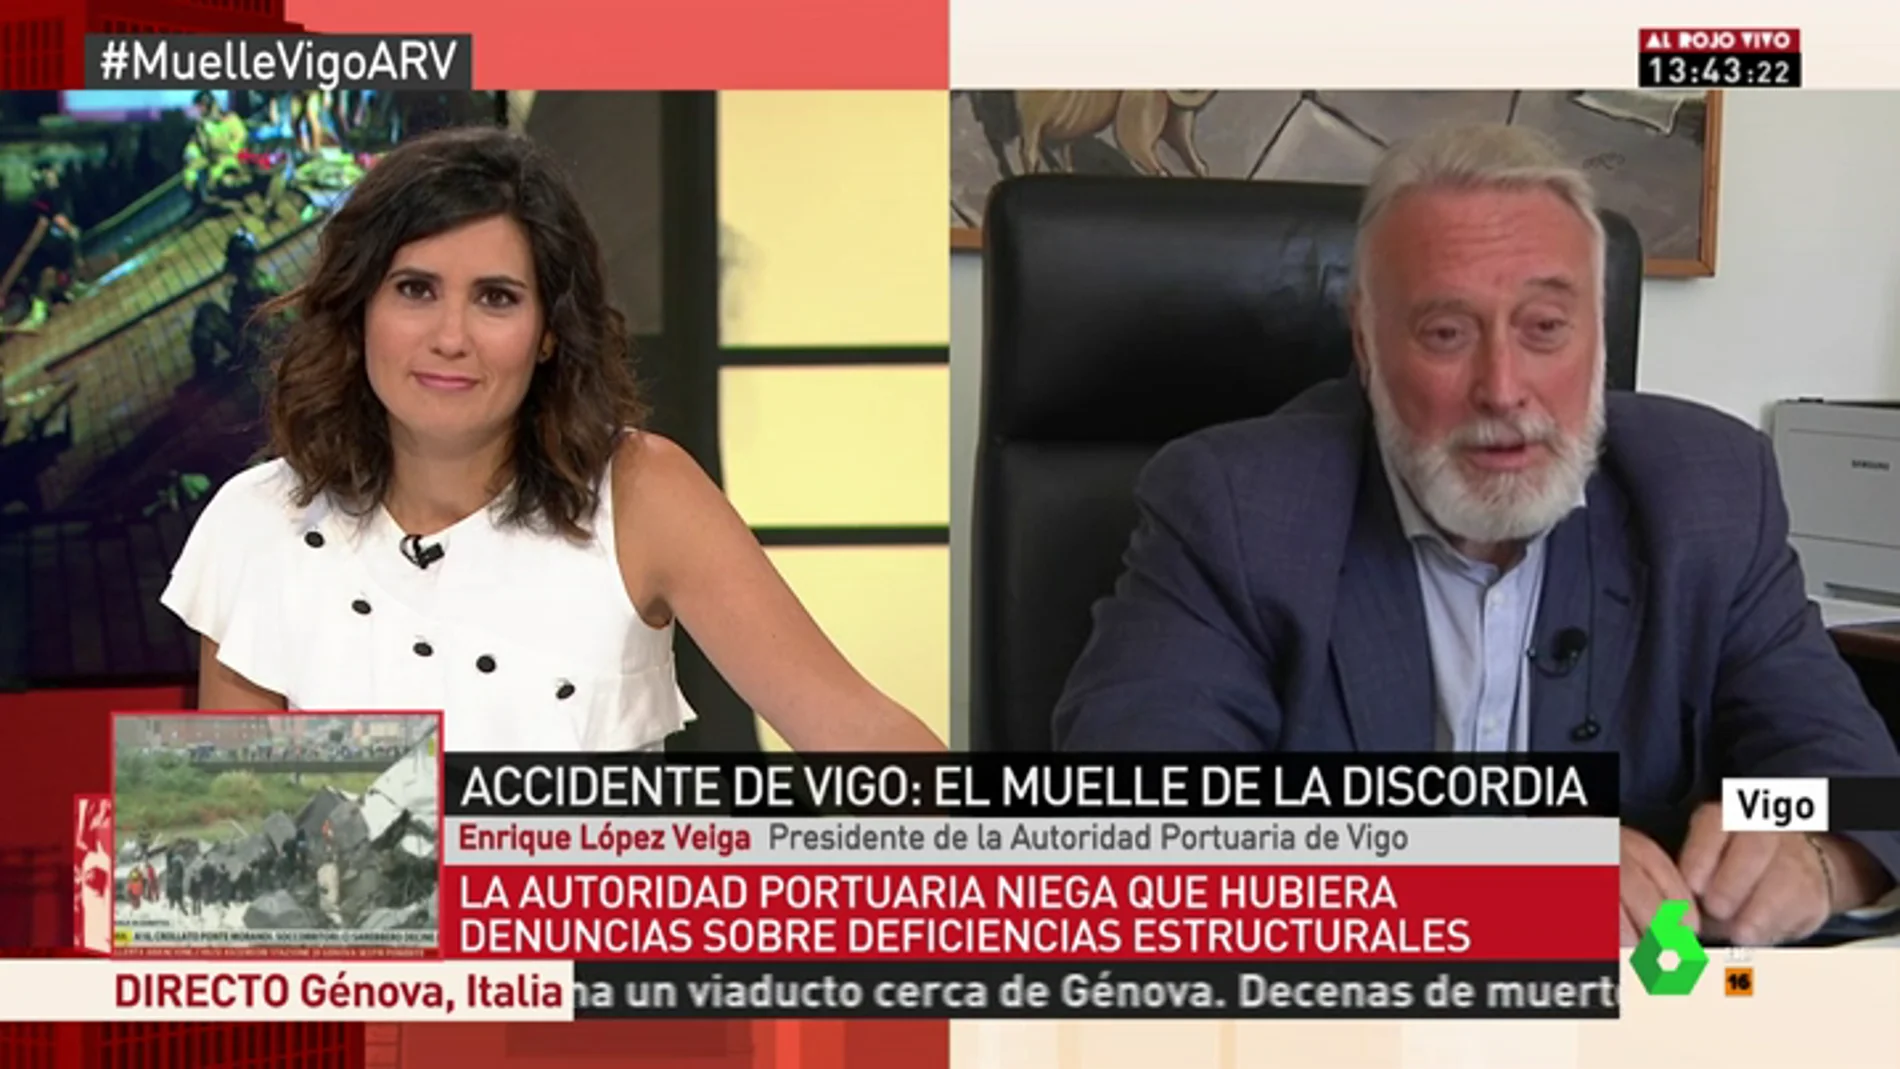 El presidente de la Autoridad Portuaria: "Ya no es un muelle, es una zona de paseo, por lo que el mantenimiento corresponde al Ayuntamiento de Vigo